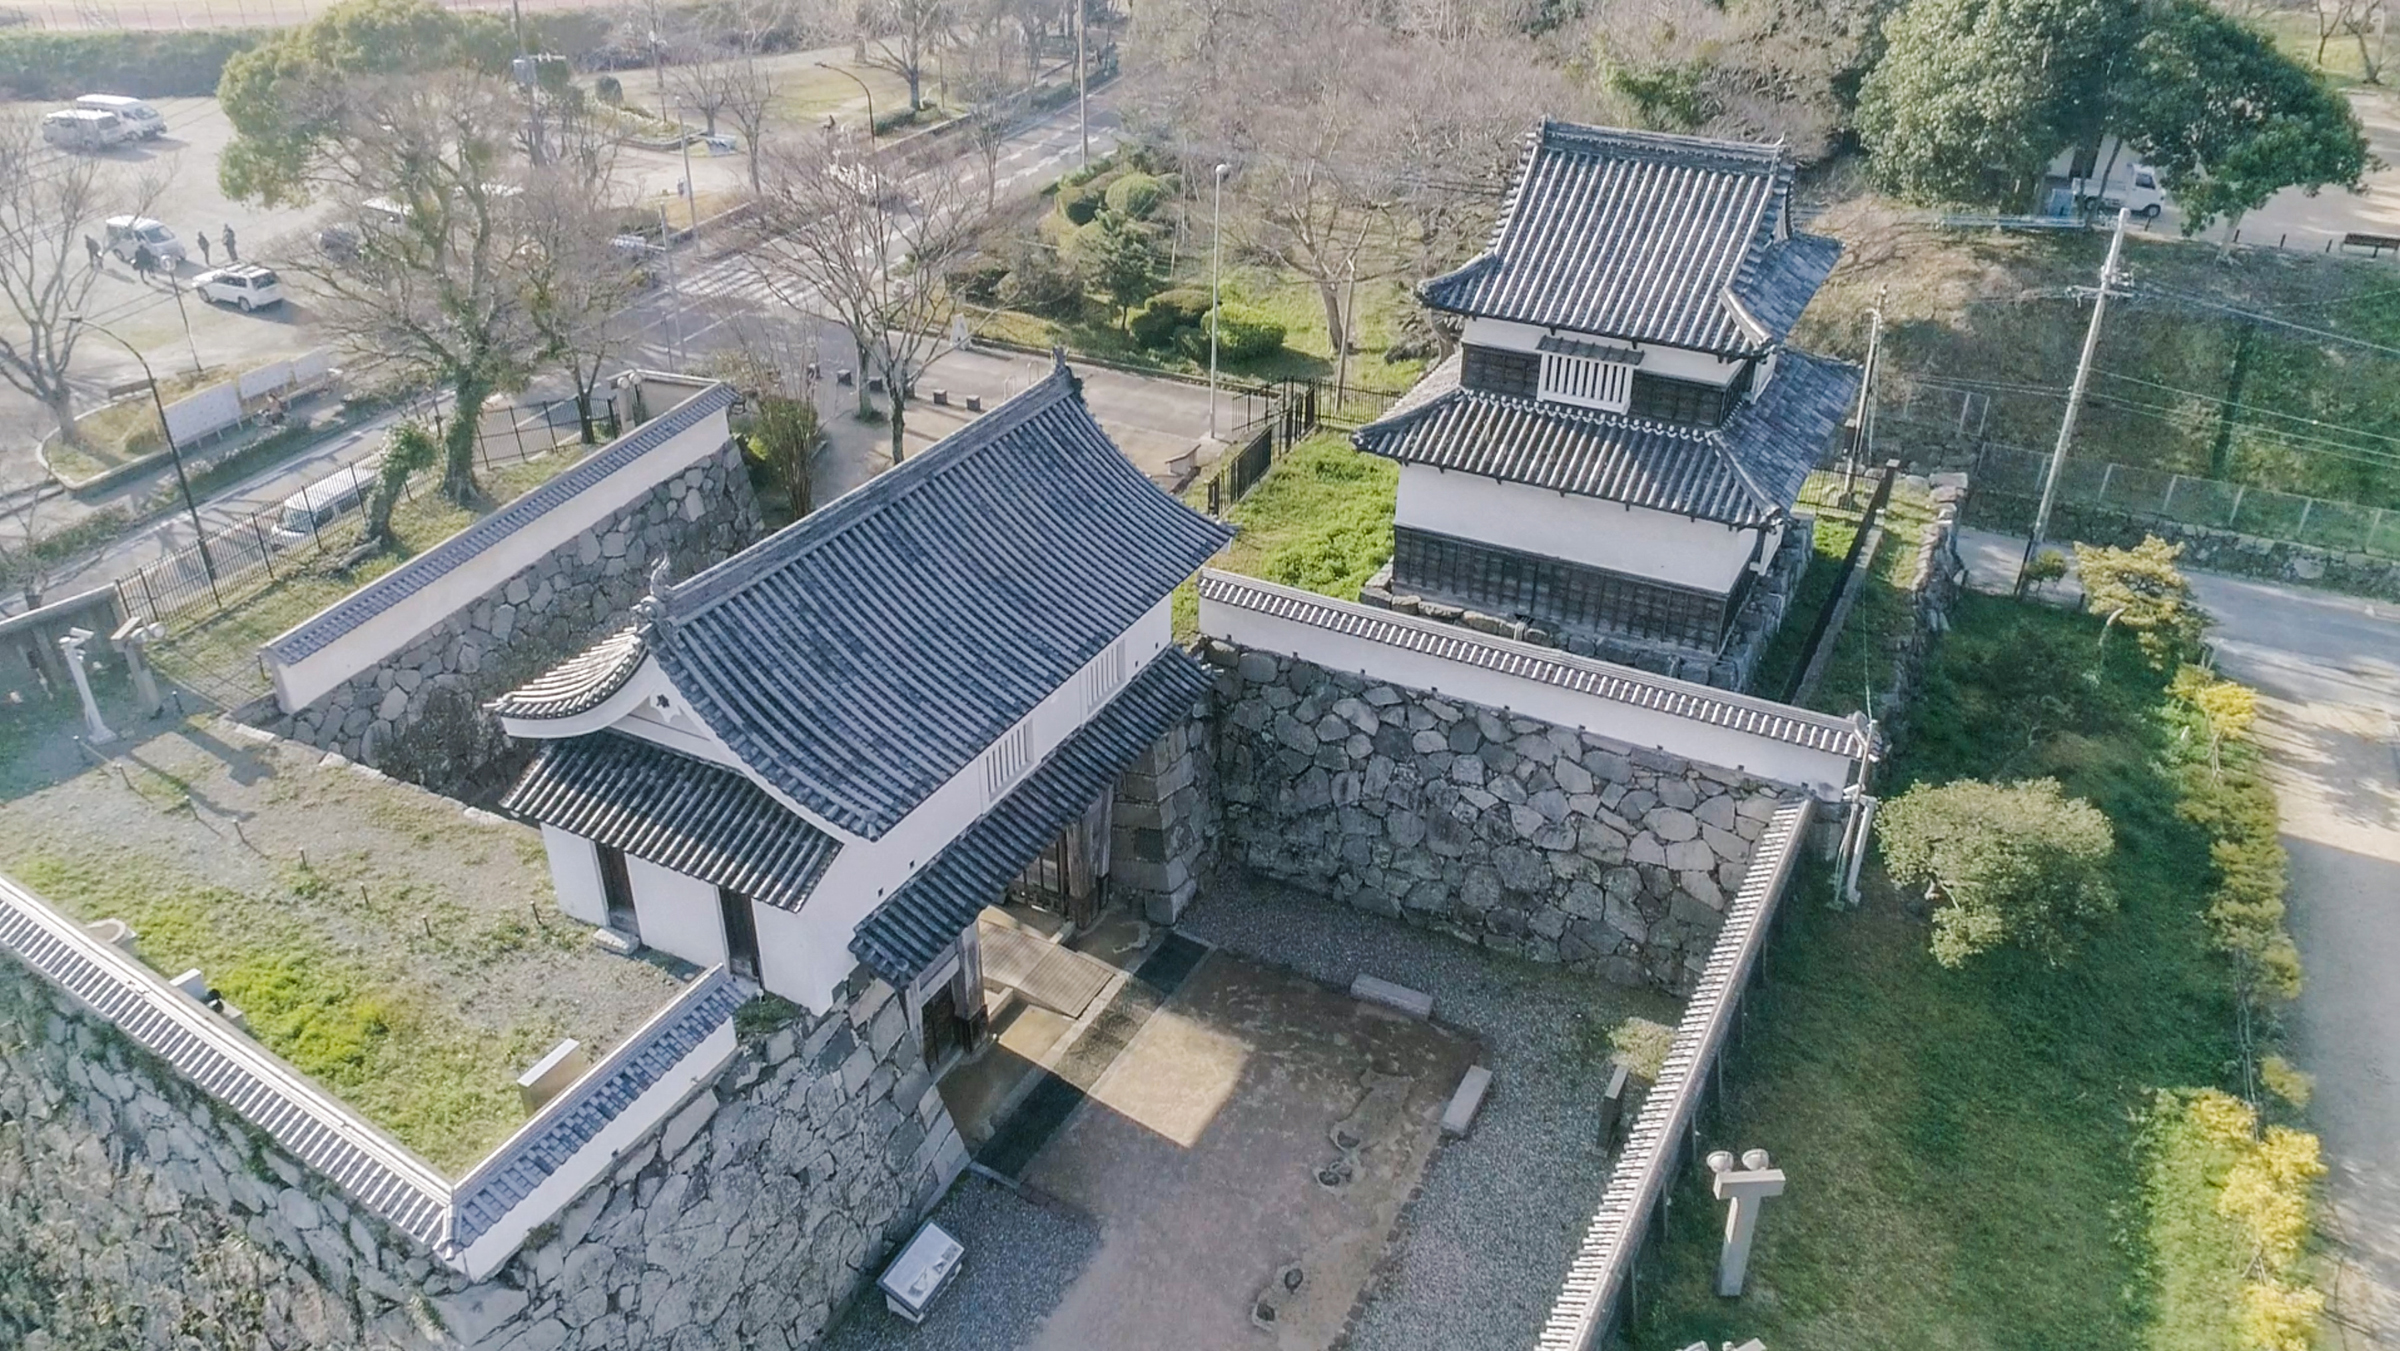 福岡城跡(2019)の画像